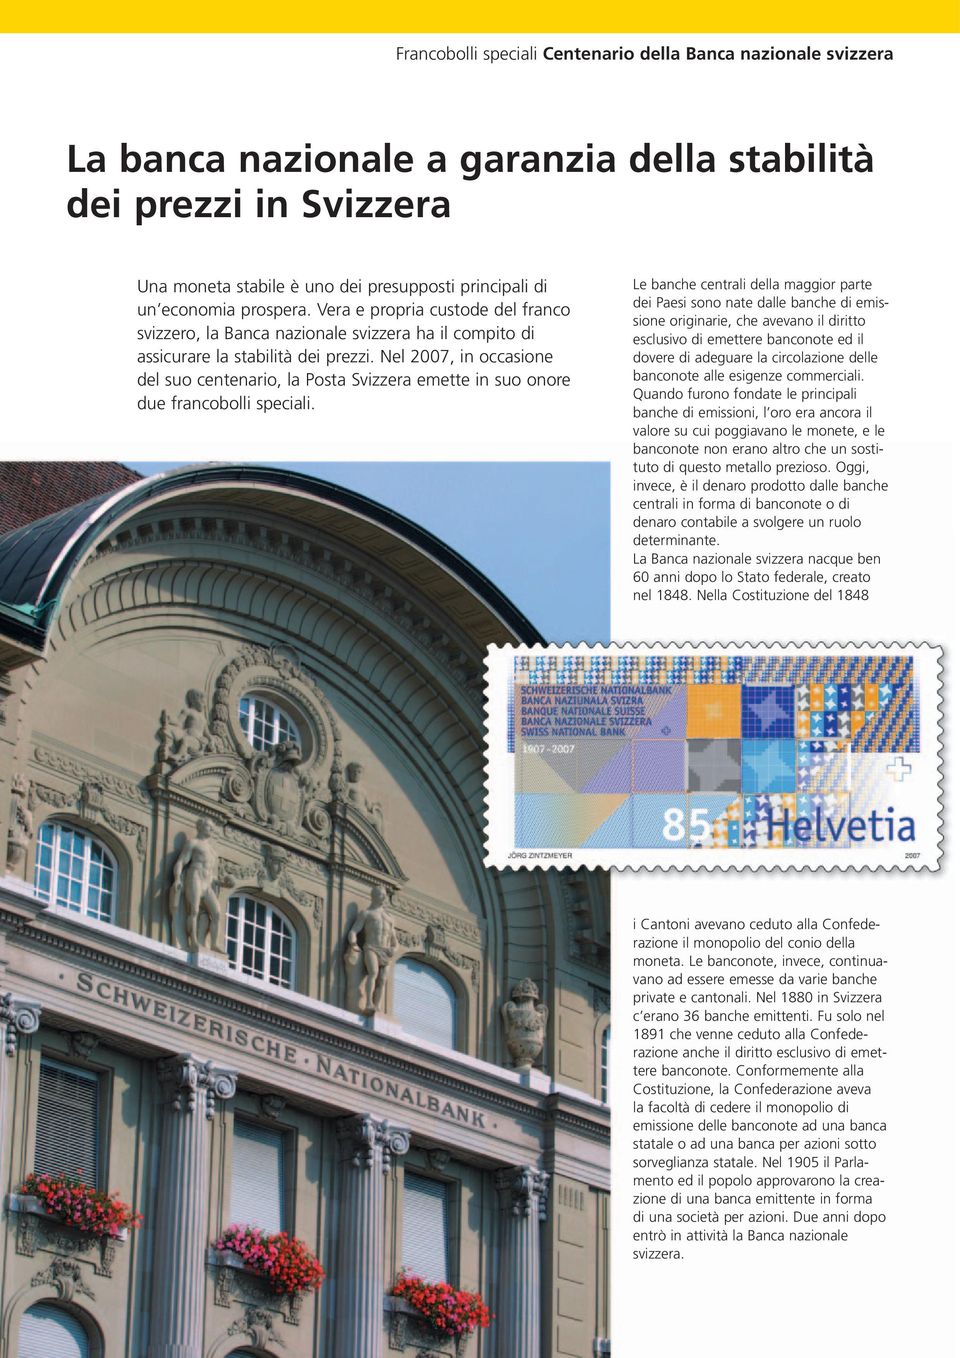 Nel 2007, in occasione del suo centenario, la Posta Svizzera emette in suo onore due francobolli speciali.